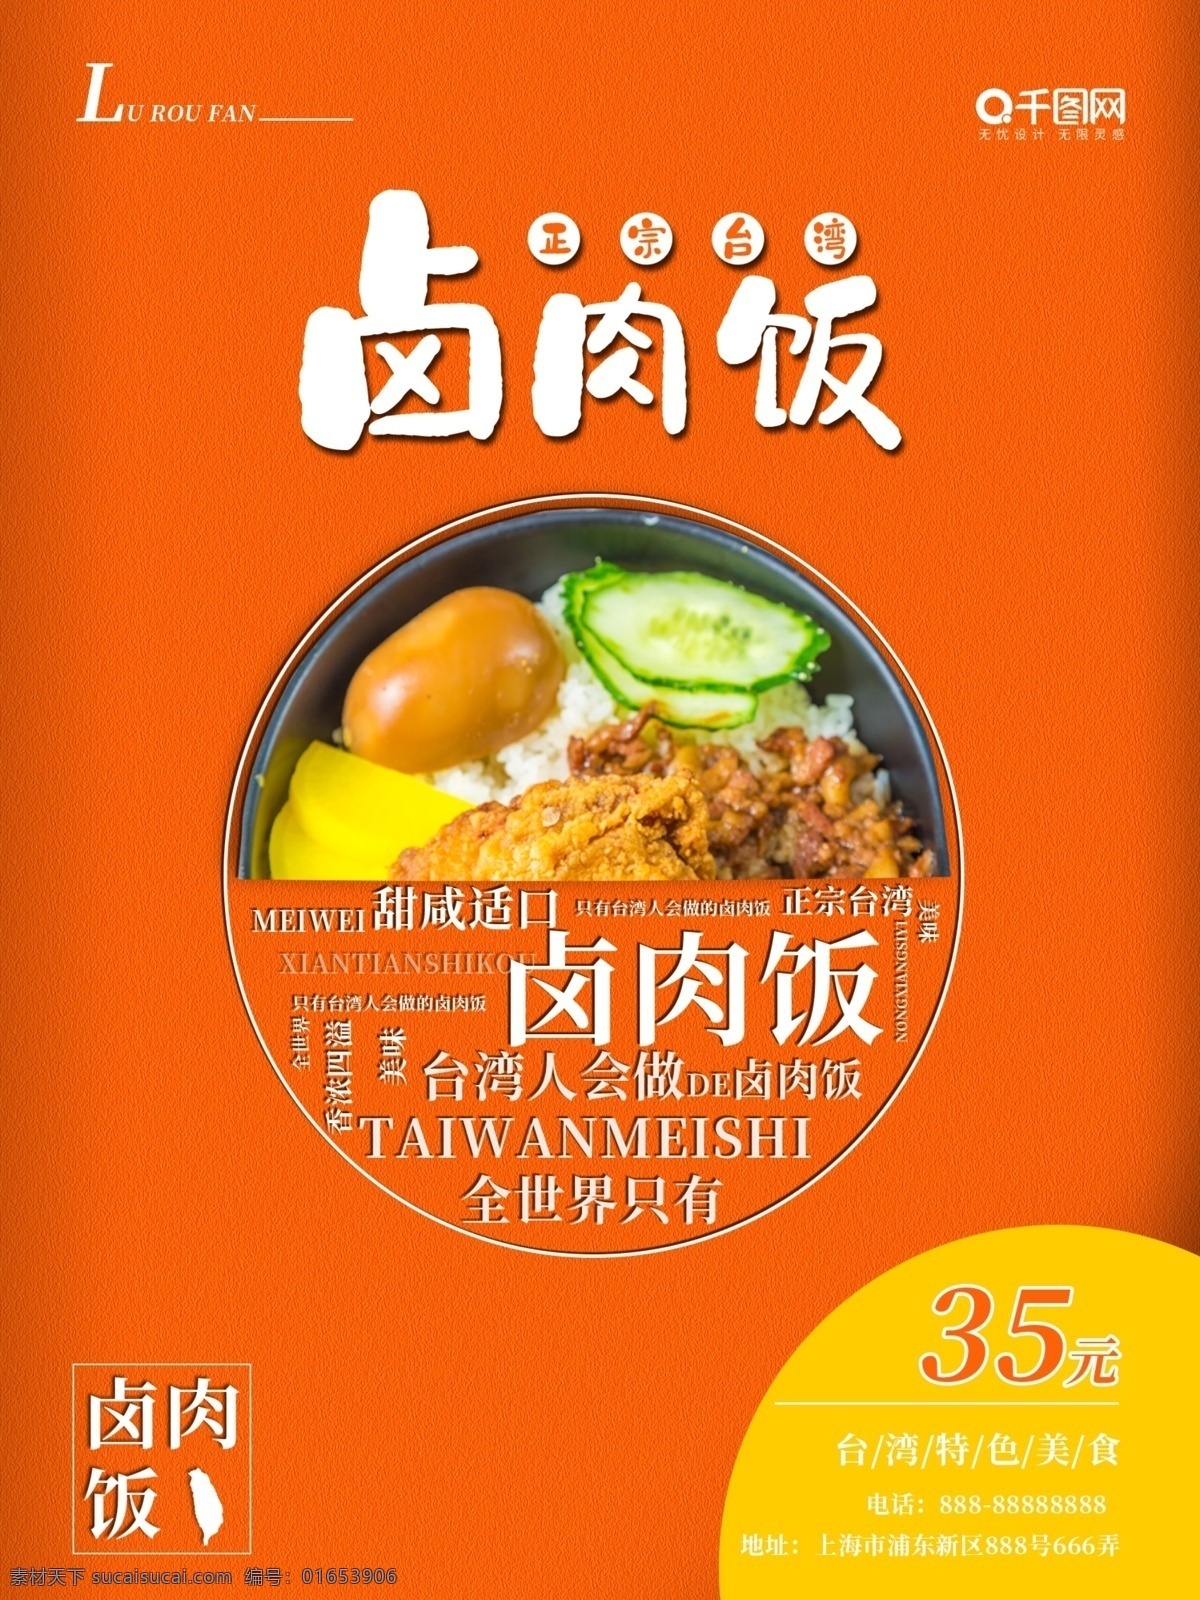 创意 台湾 美食 卤肉 饭 宣传海报 海报 台湾美食 台湾卤肉饭 卤肉饭海报 黑色背景 创意美食海报